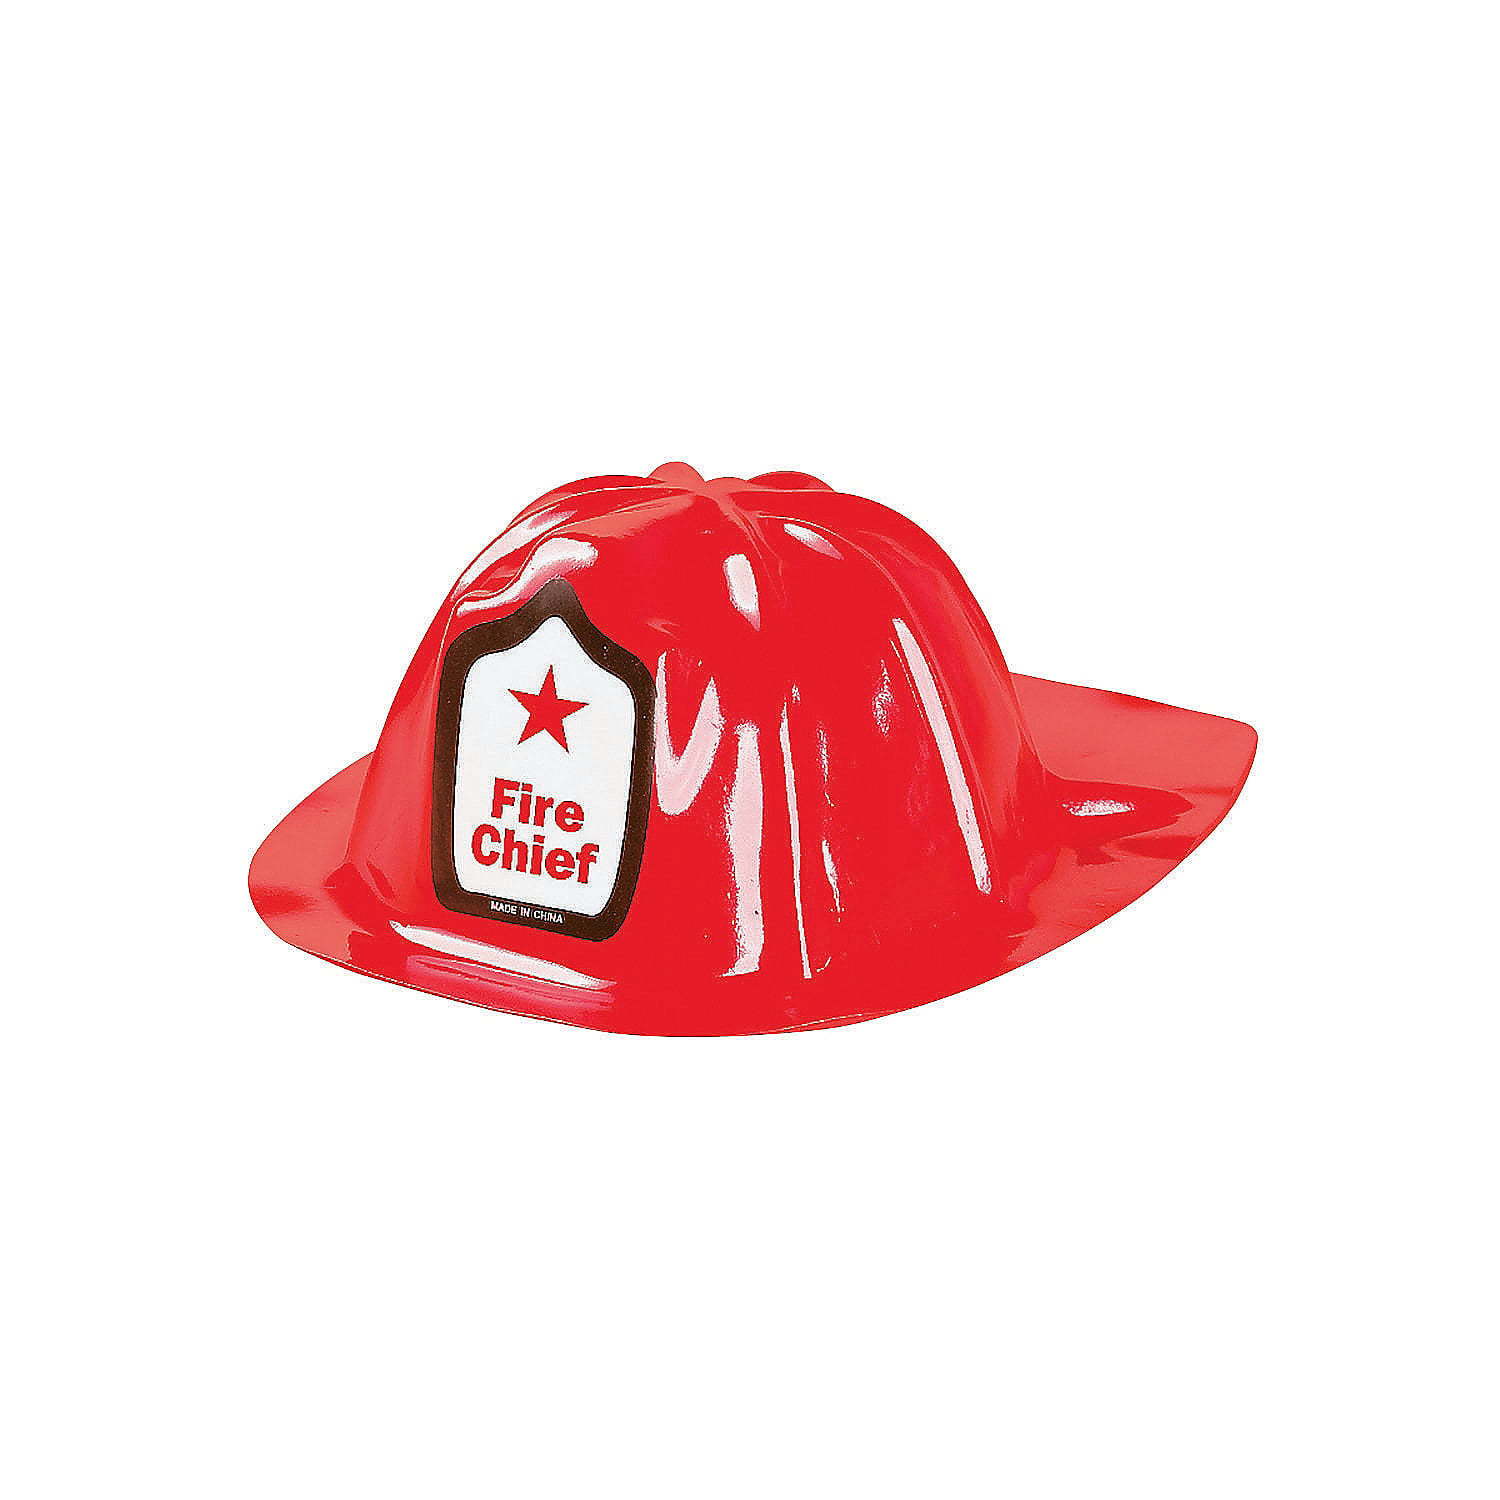 Каска в форме шляпы. Каска пожарного. Каска пожарника. Каска пожарного для детей. Шляпа пожарного.